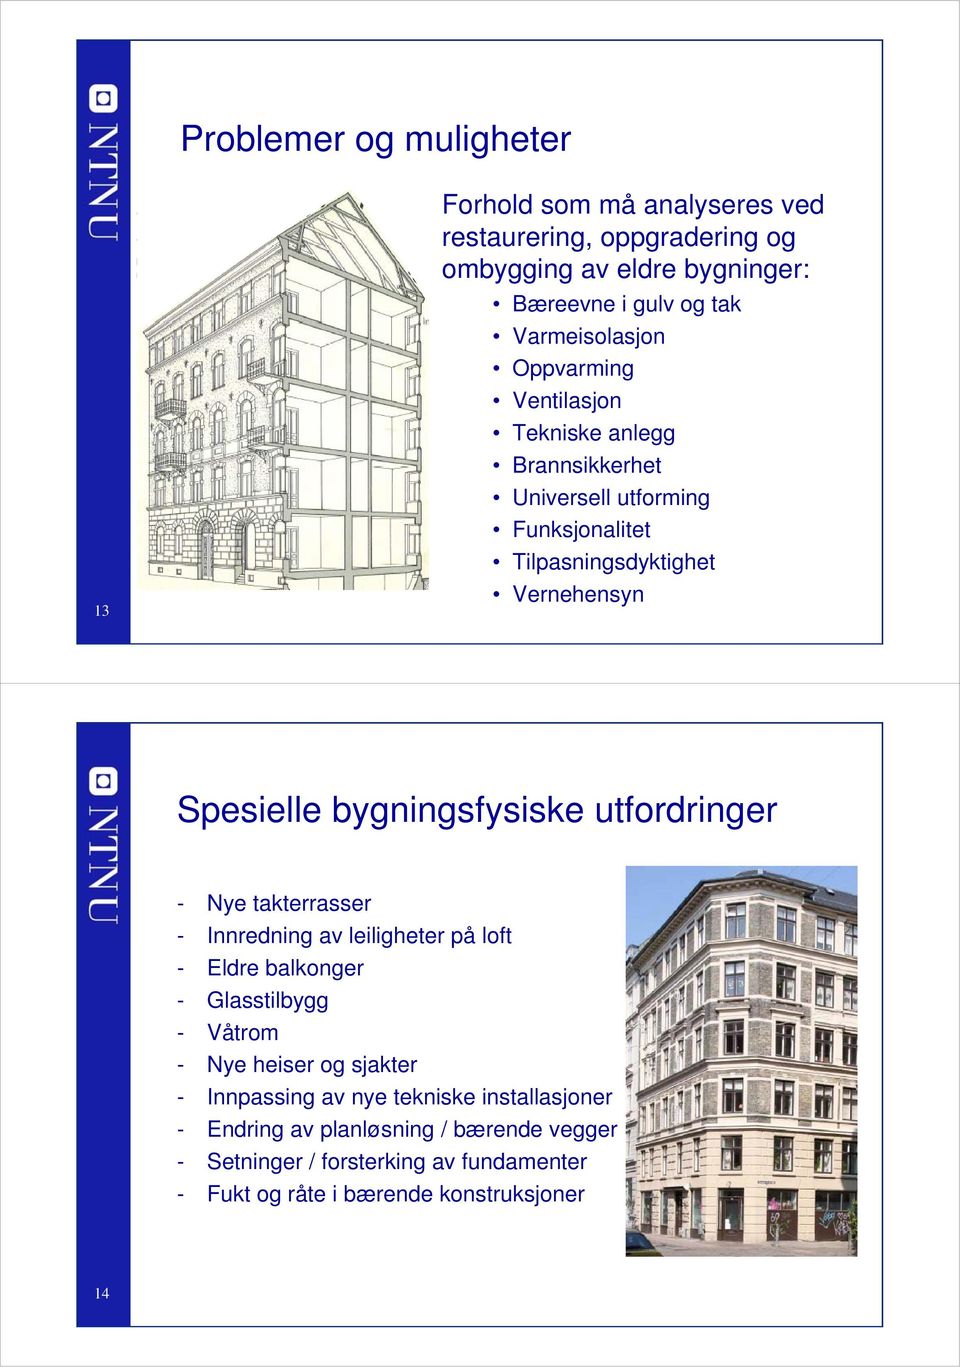 bygningsfysiske utfordringer - Nye takterrasser - Innredning av leiligheter på loft - Eldre balkonger - Glasstilbygg - Våtrom - Nye heiser og sjakter -